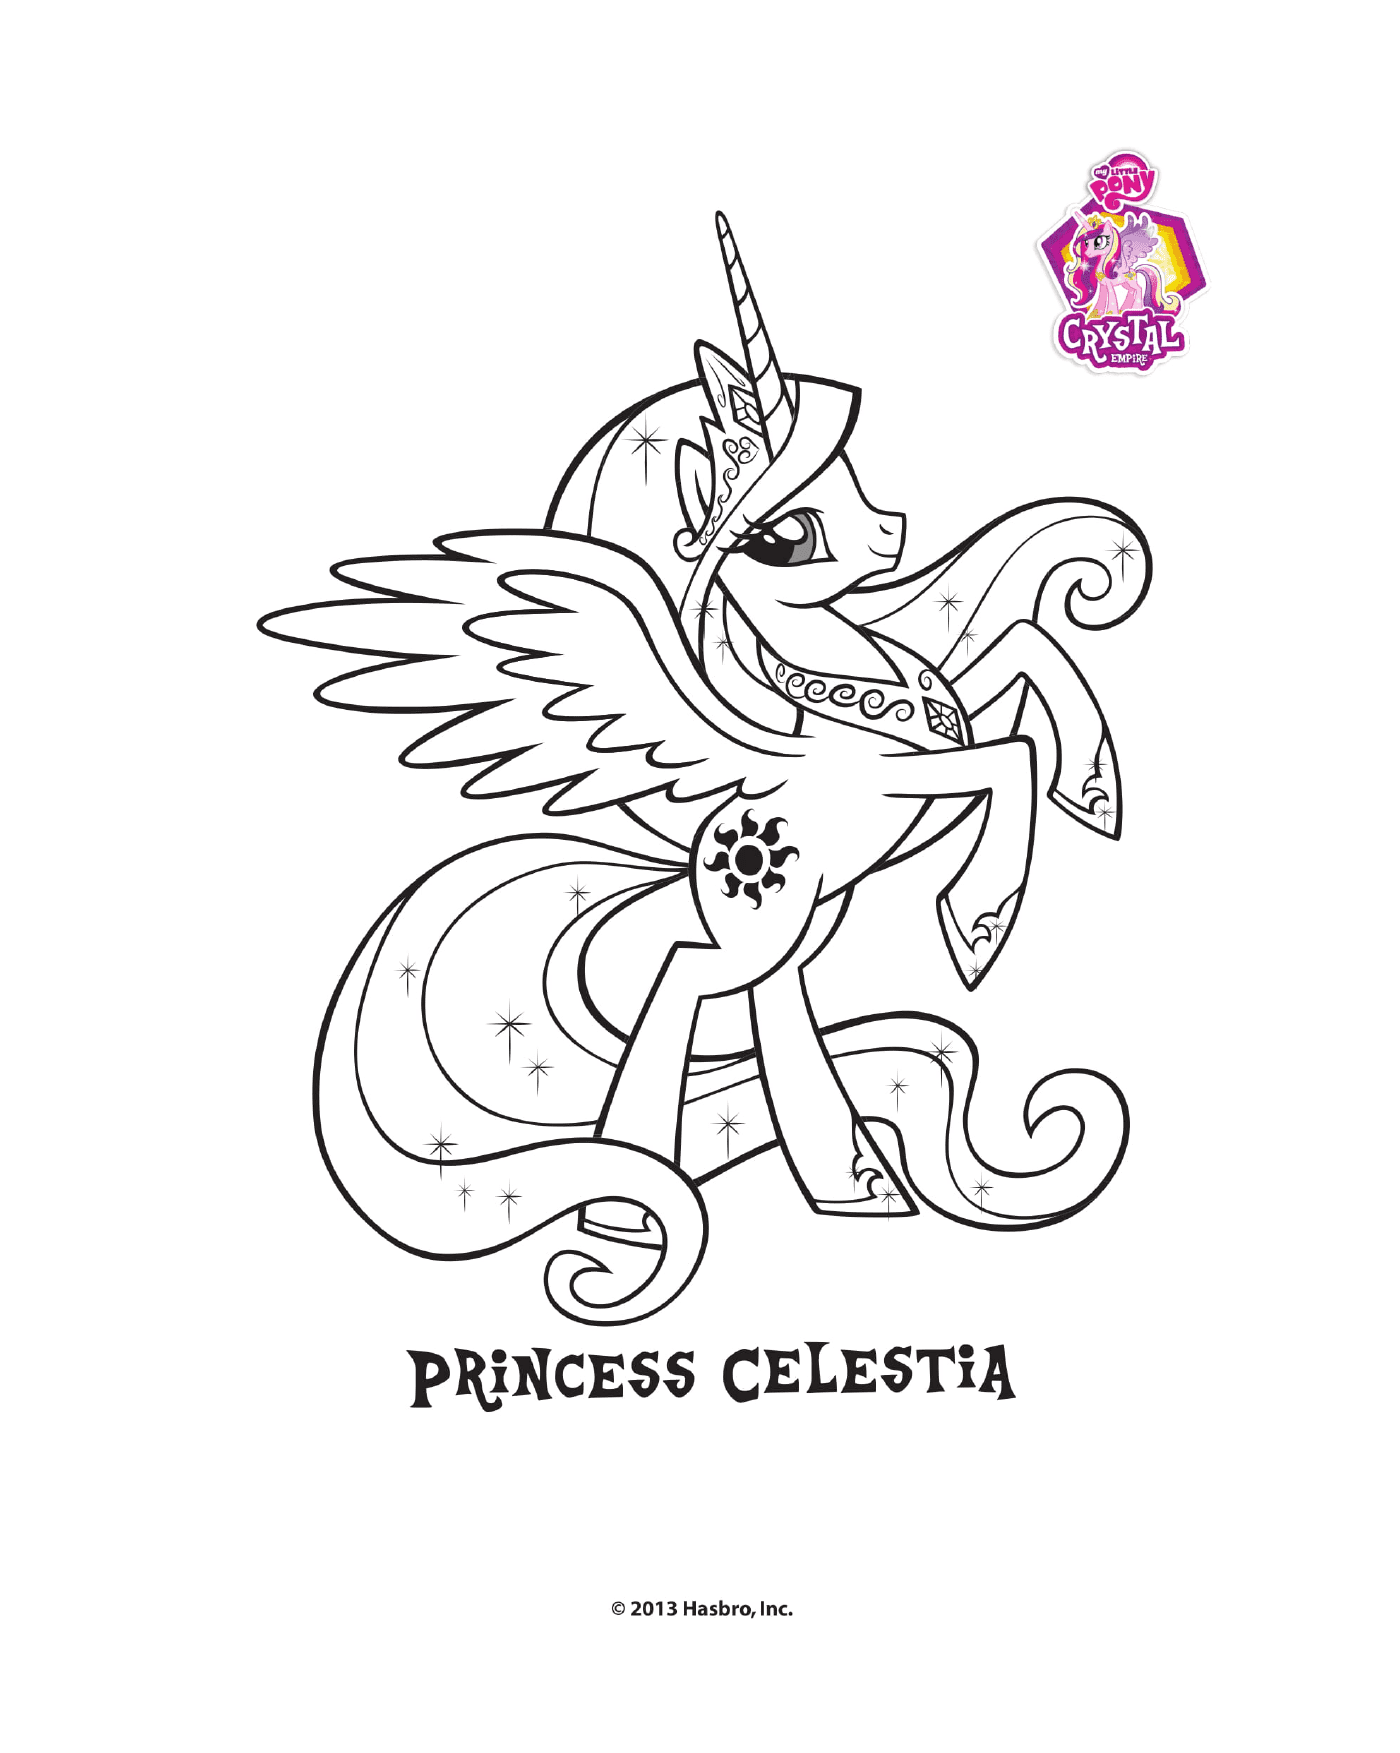  Princesa Celestia do Império Cristal 